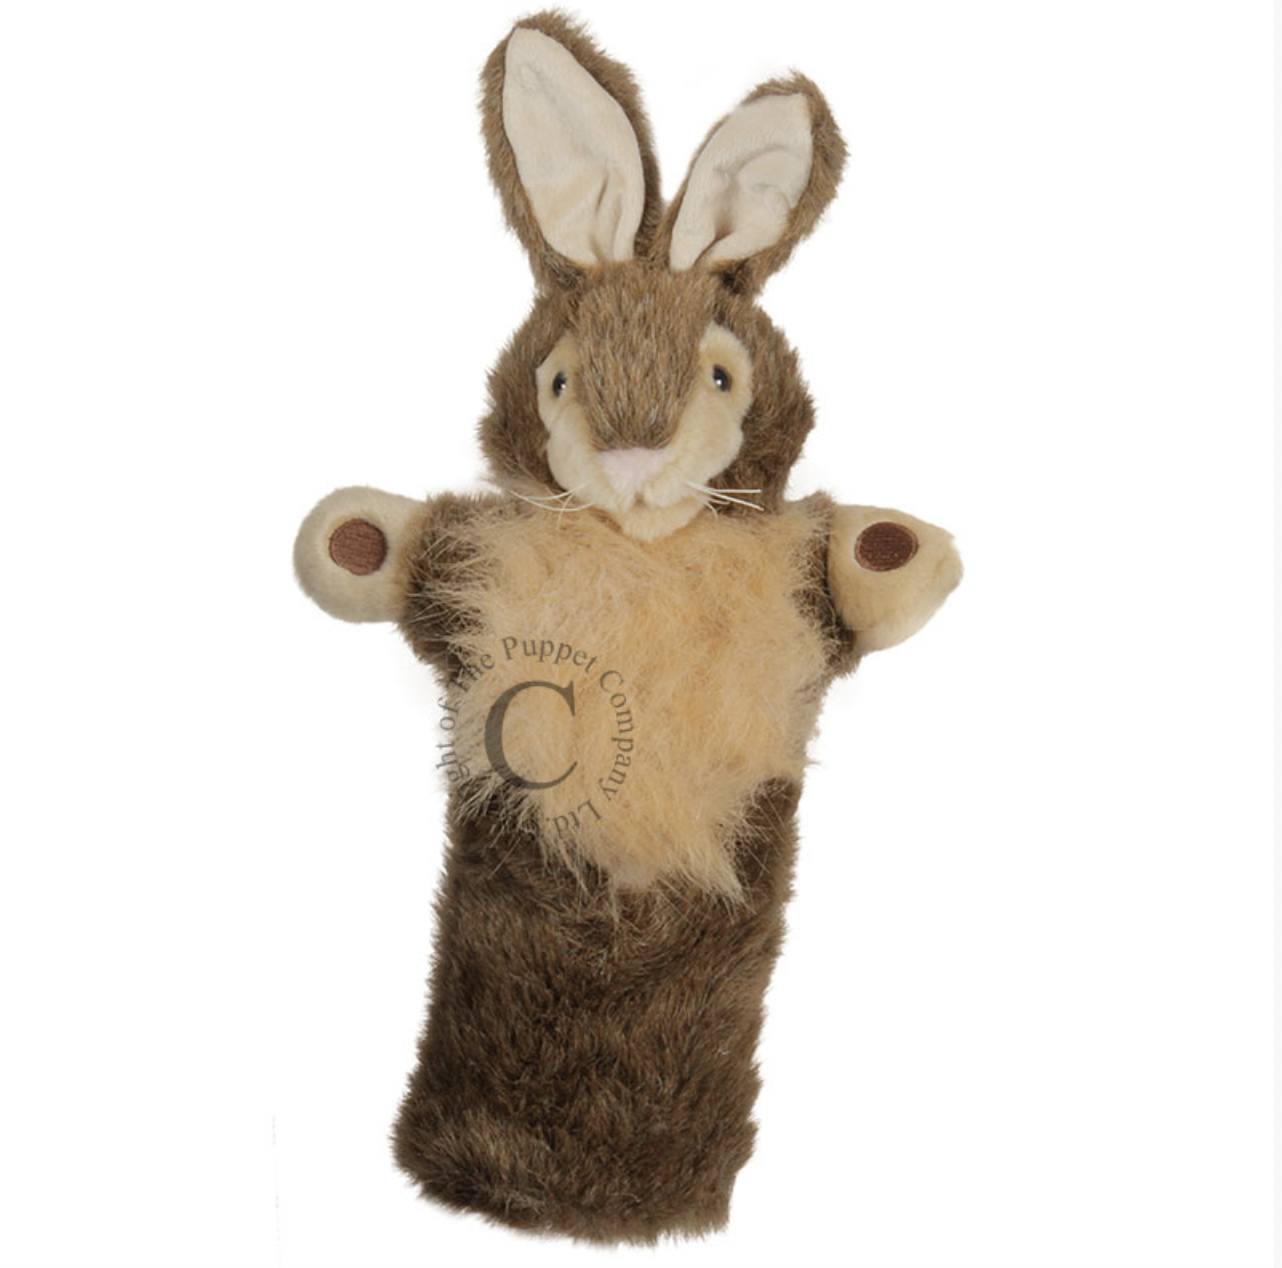 https://cdn.shoplightspeed.com/shops/632156/files/47407797/the-puppet-co-wild-rabbit-long-sleeve-hand-puppet.jpg